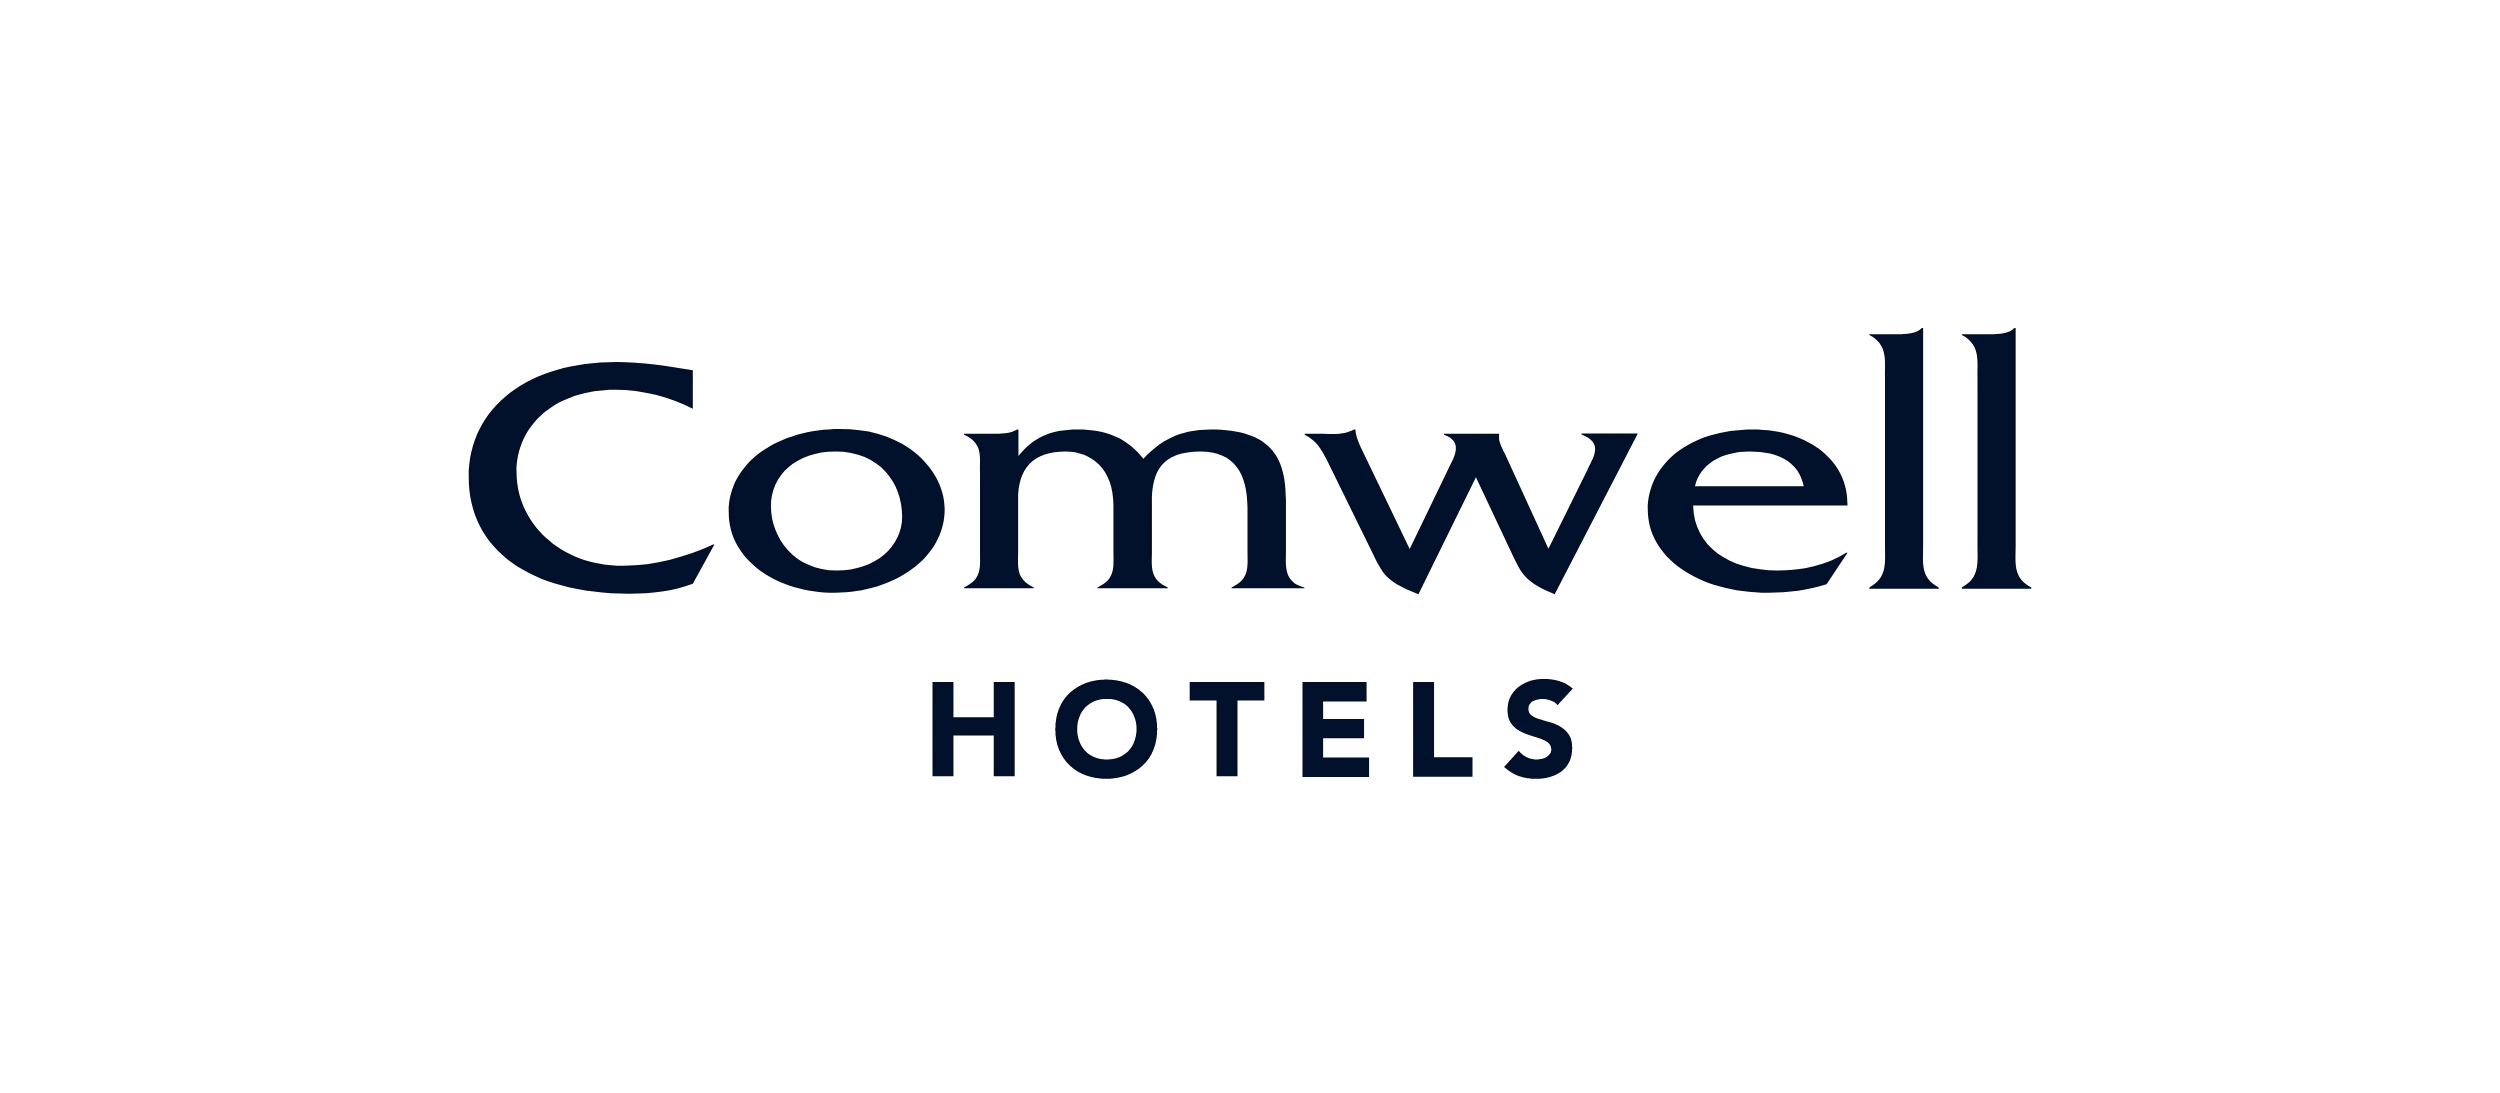 Comwell hotels - logo